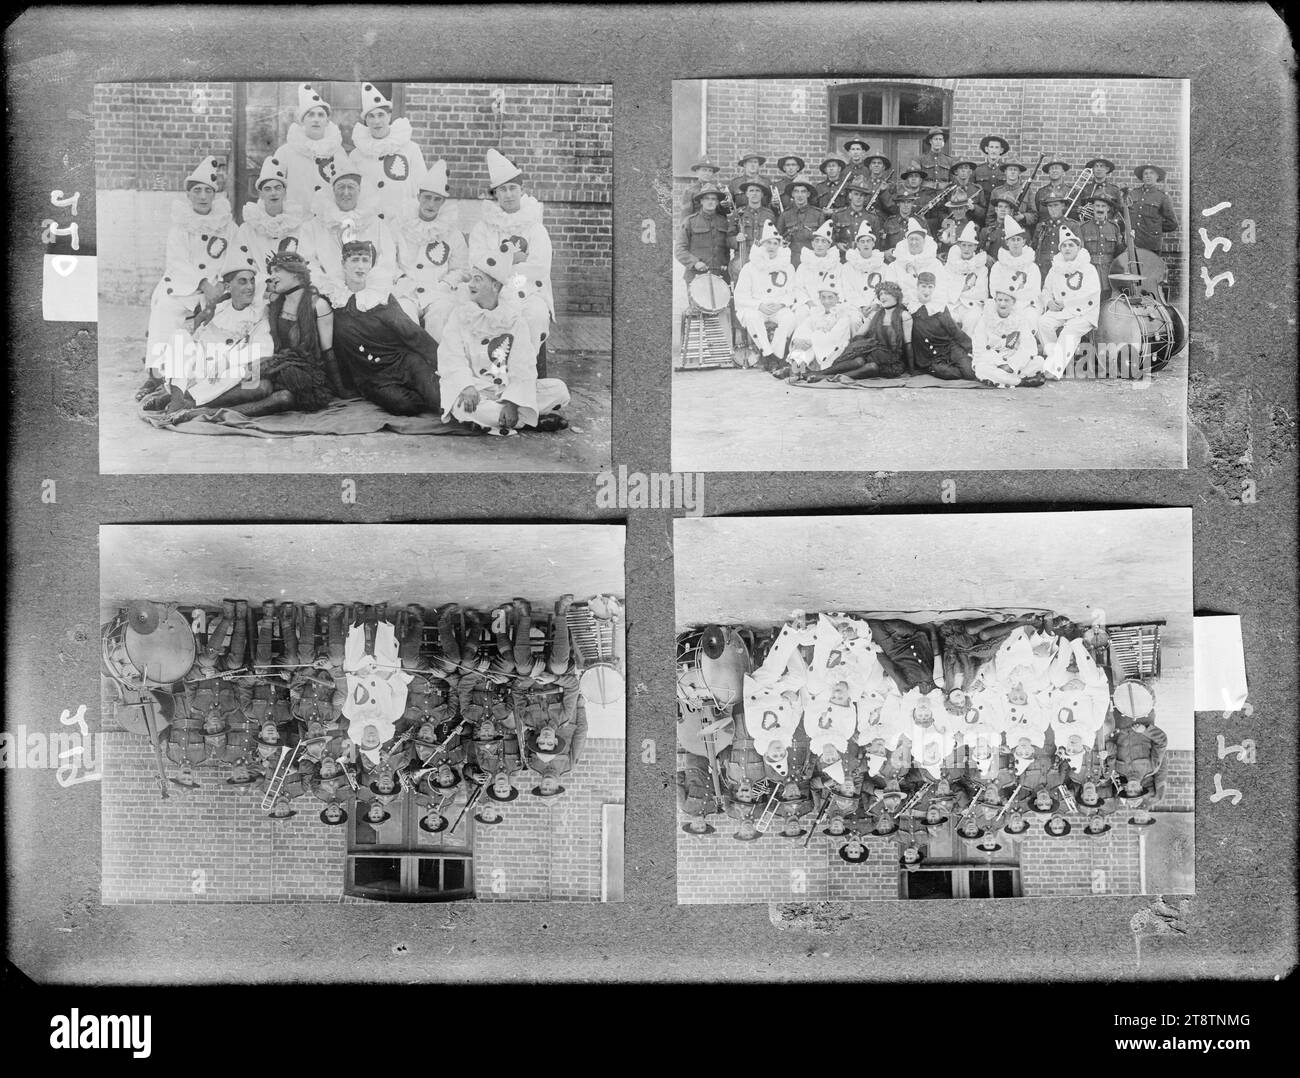 Vier Gruppenfotos von Digger Pierrot aus dem Ersten Weltkrieg, Kopie negativ einer Reihe von vier Gruppenporträtfotos (gekennzeichnet mit 219 bis 225) der „Digger Pierrots“, einer Unterhaltungsgruppe, die 1917 an der Westfront gegründet wurde, um neuseeländische Soldaten während des Ersten Weltkriegs zu unterhalten, und deren Orchester. Foto zwischen 1917 und 1918 Stockfoto